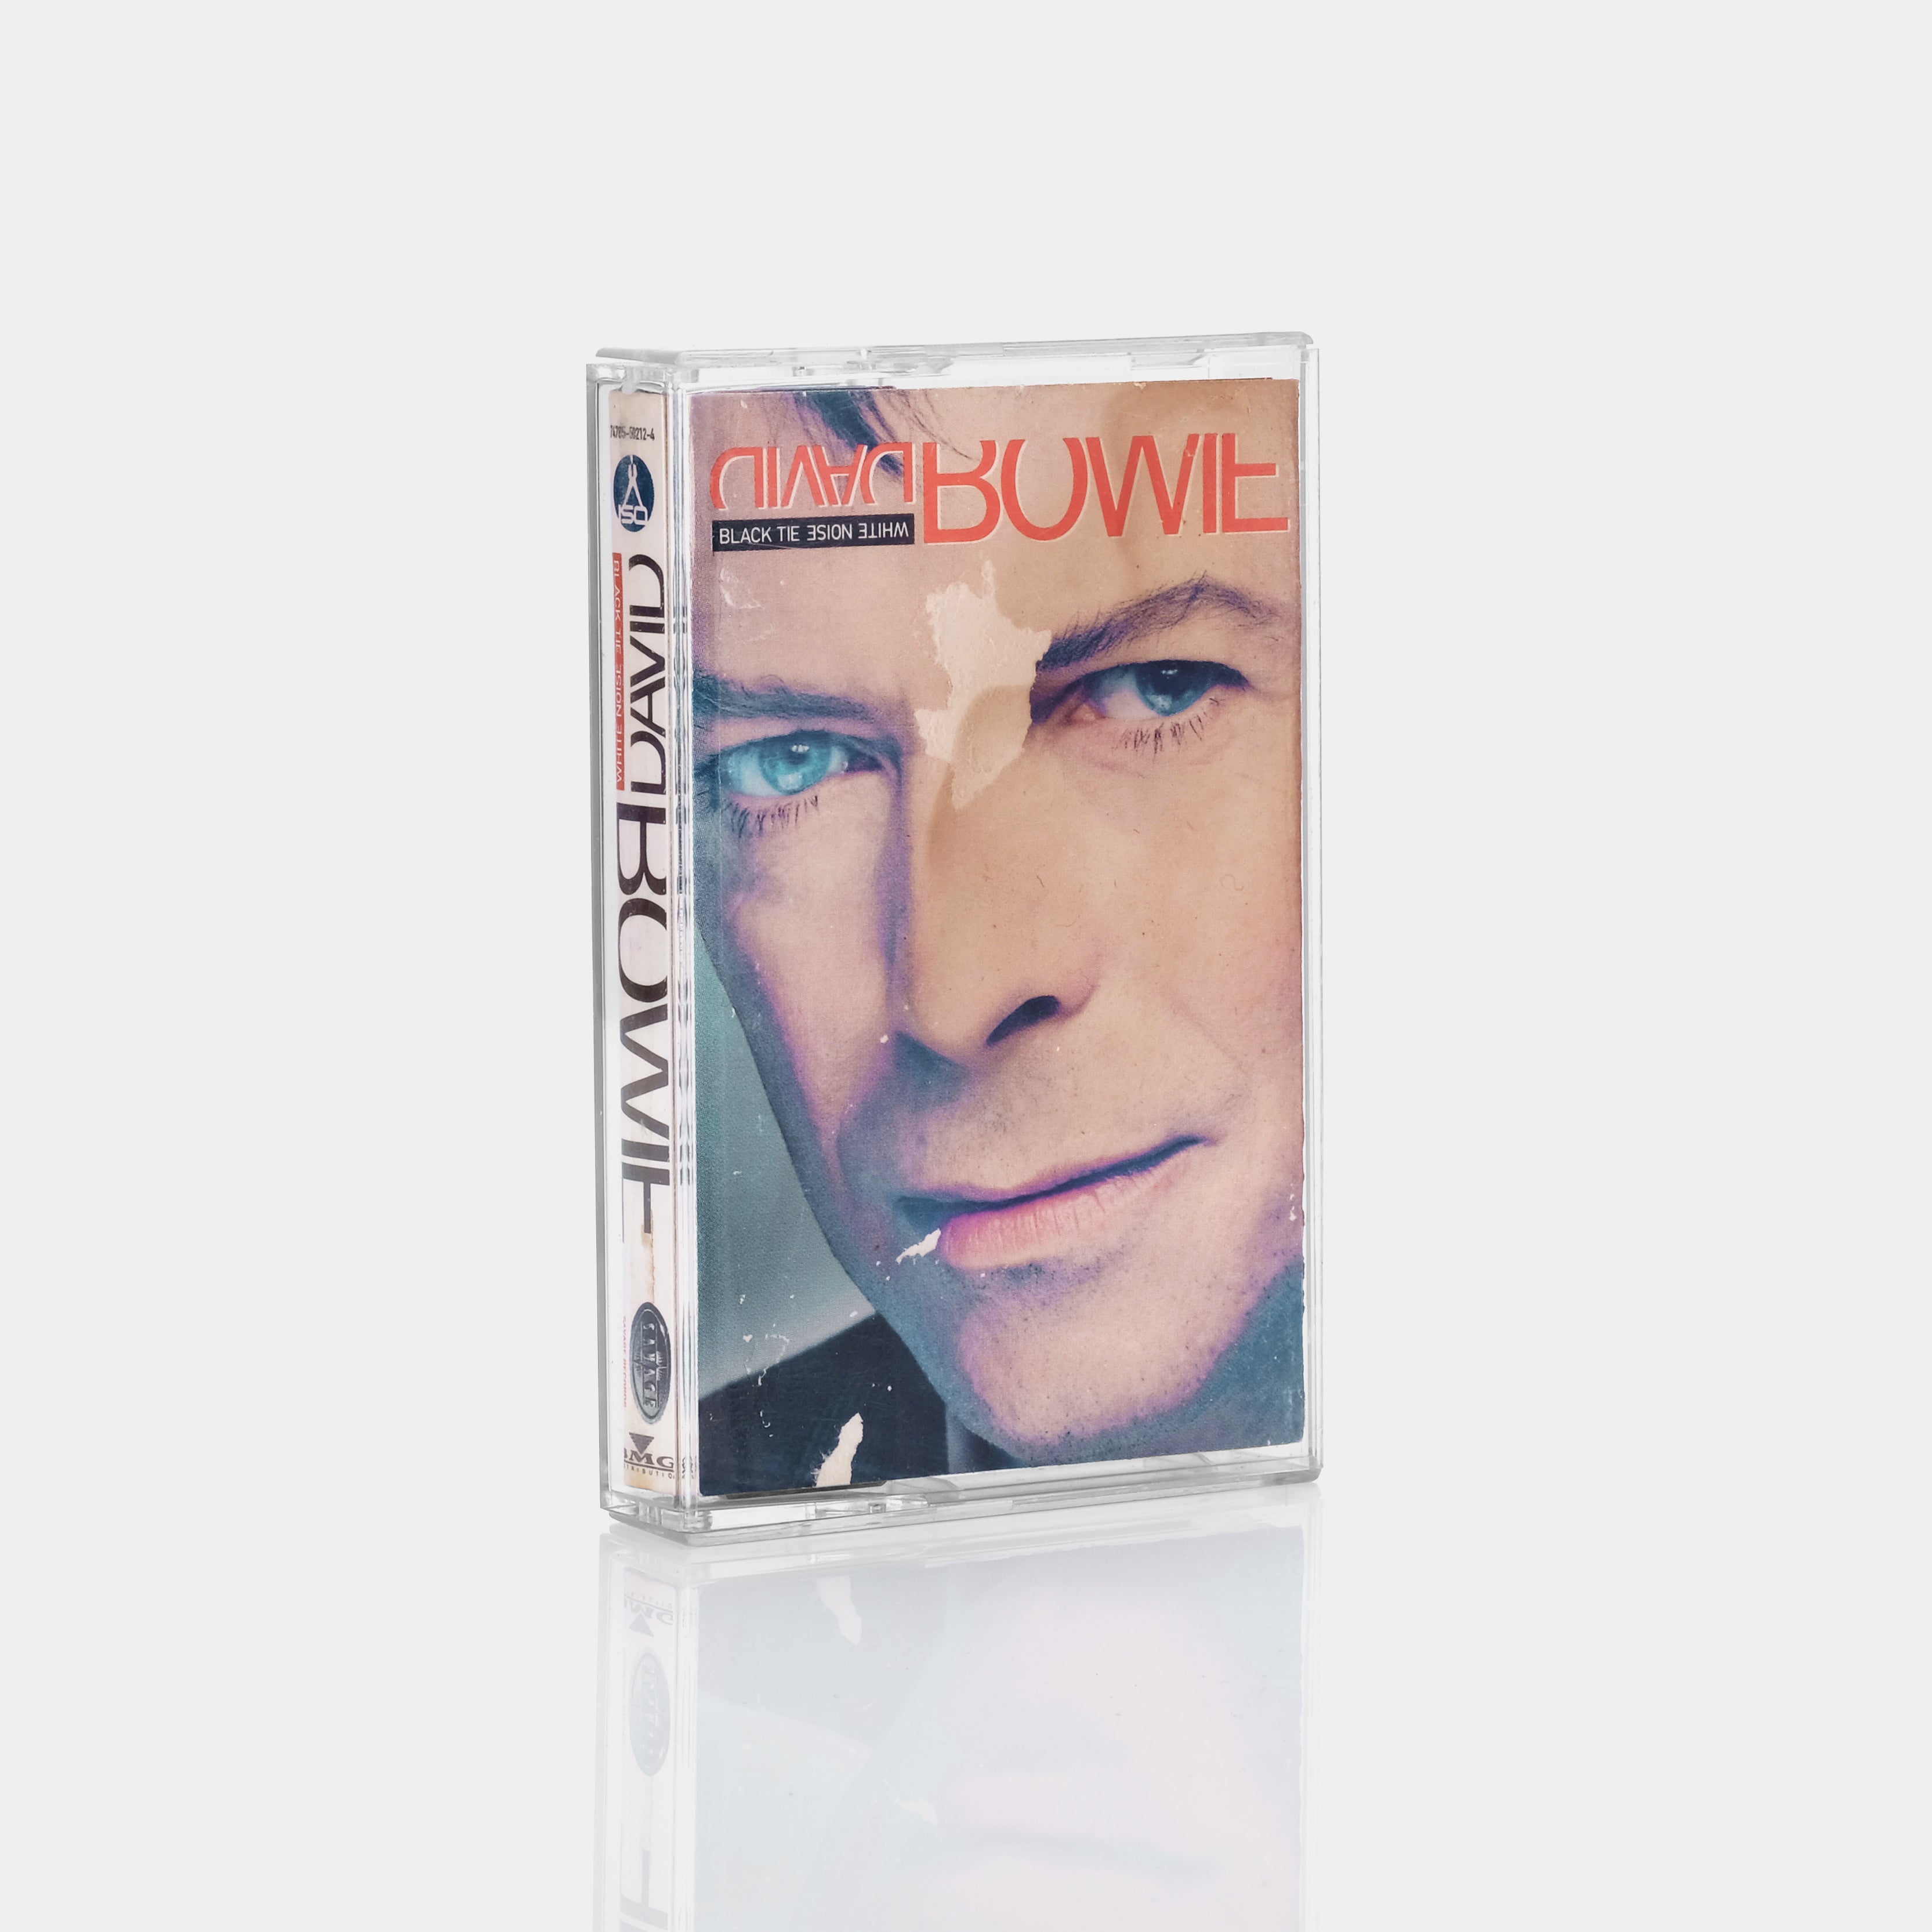 David Bowie - Black Tie White Noise Cassette Tape